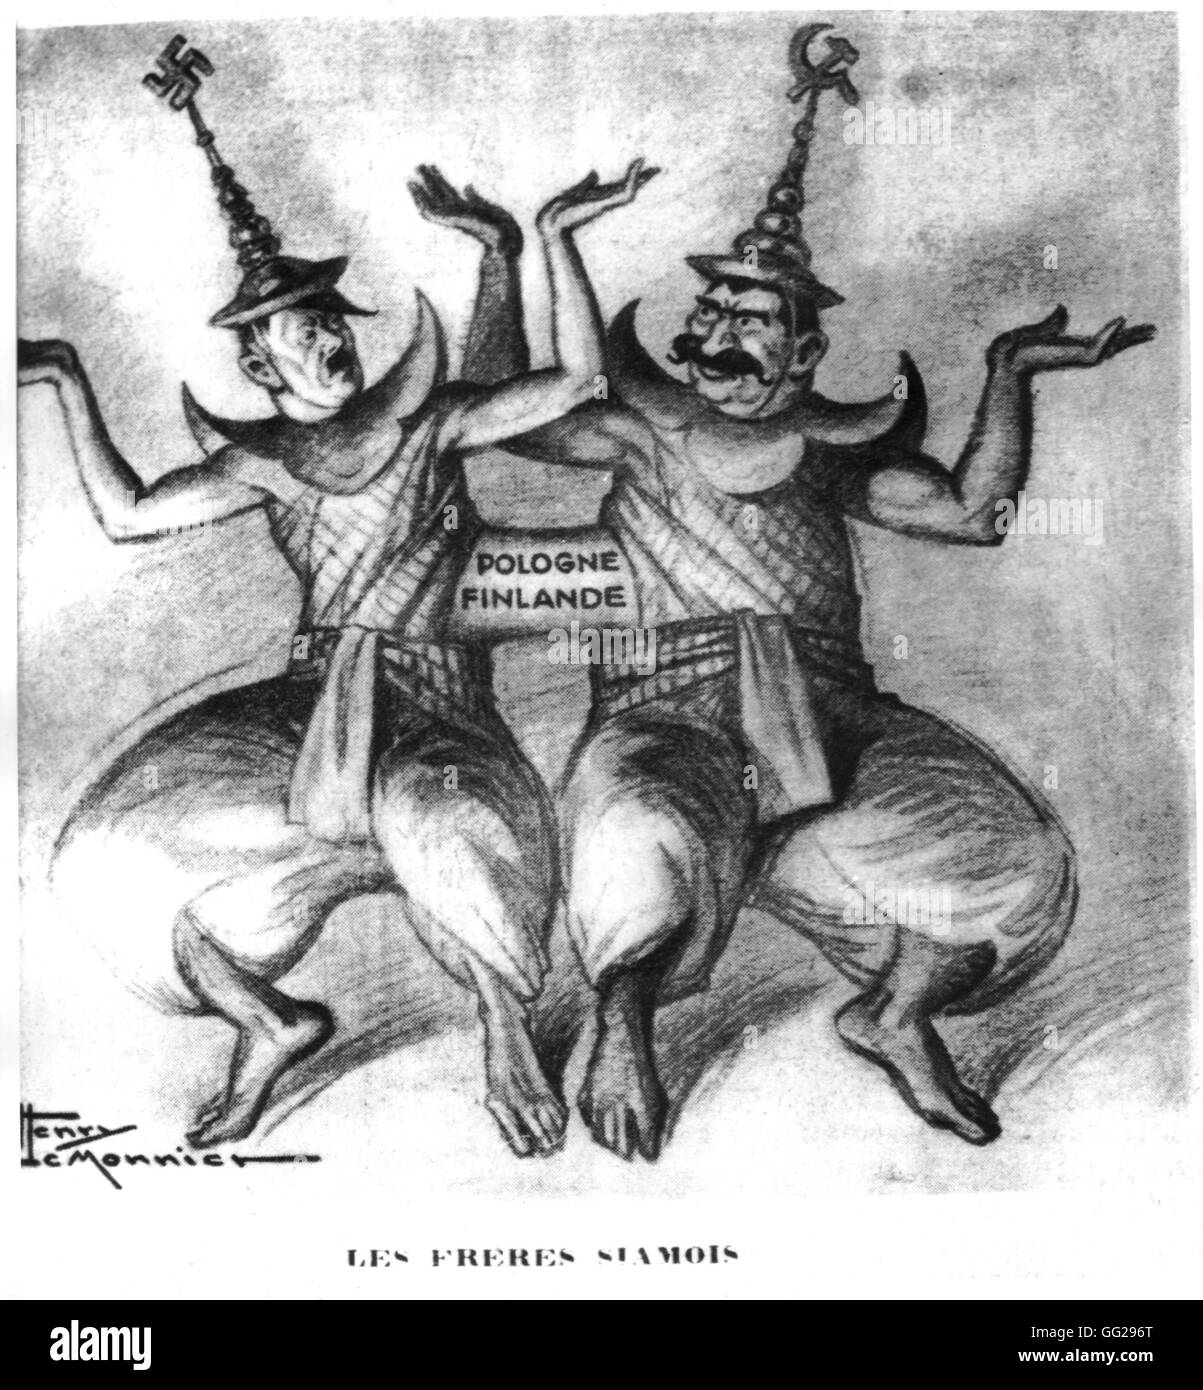 Vignetta satirica da Henri Le Monnier, pubblicato in 'Marianne': gemelli siamesi. Hitler e Stalin legato dalla Polonia e Finlandia 21 febbraio 1940 FRANCIA - SECONDA GUERRA MONDIALE Foto Stock